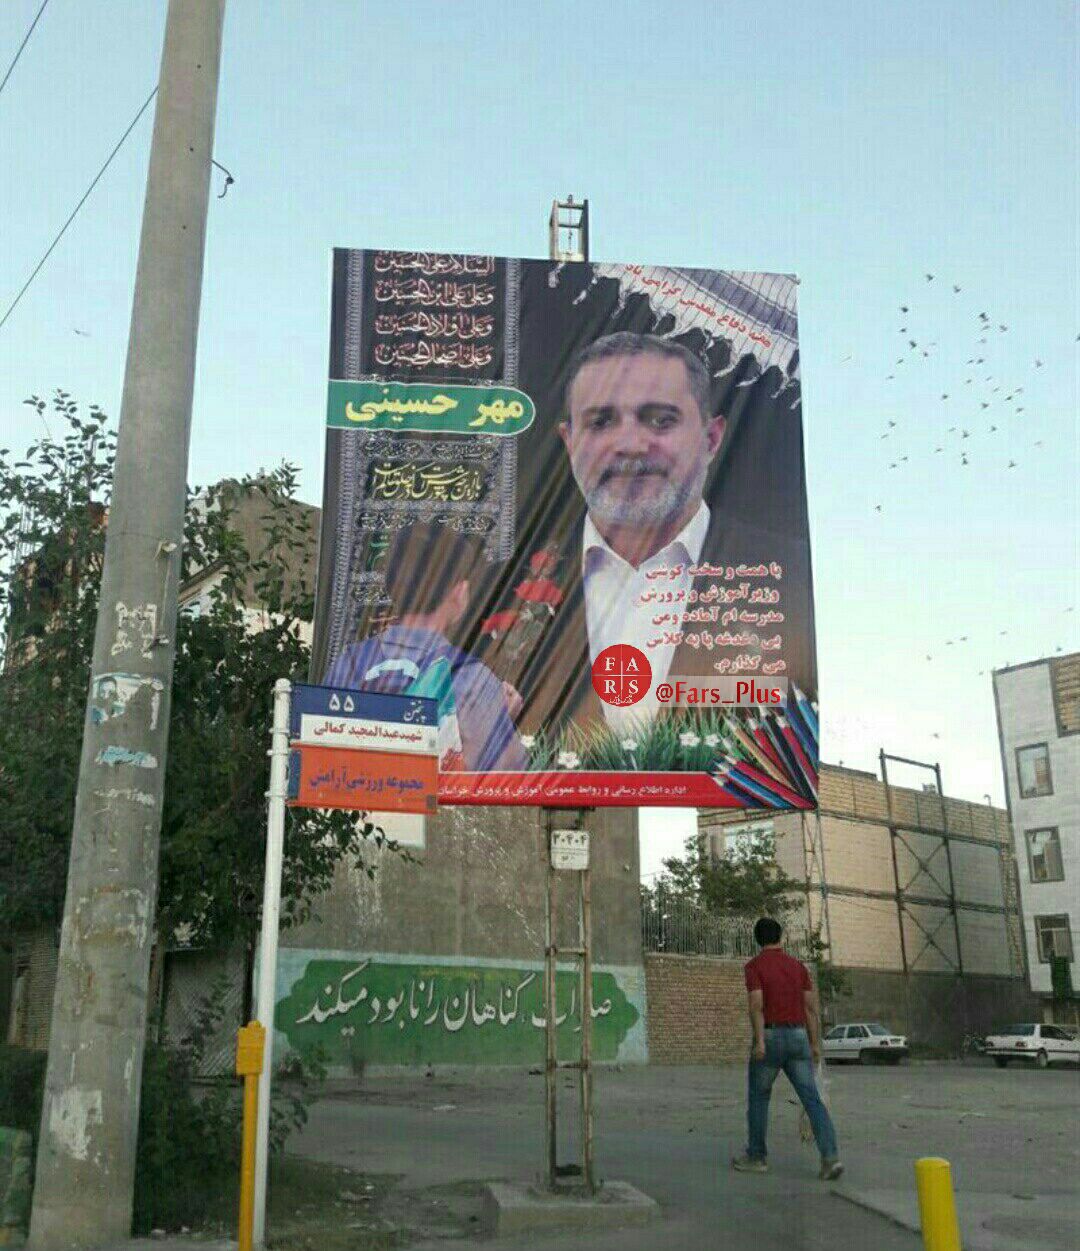 واکنش وزارت آموزش و پرورش به بنر وزیر :کار شهرداری مشهد بود/ تذکر و برخورد با تصاویر تملق‌آميز